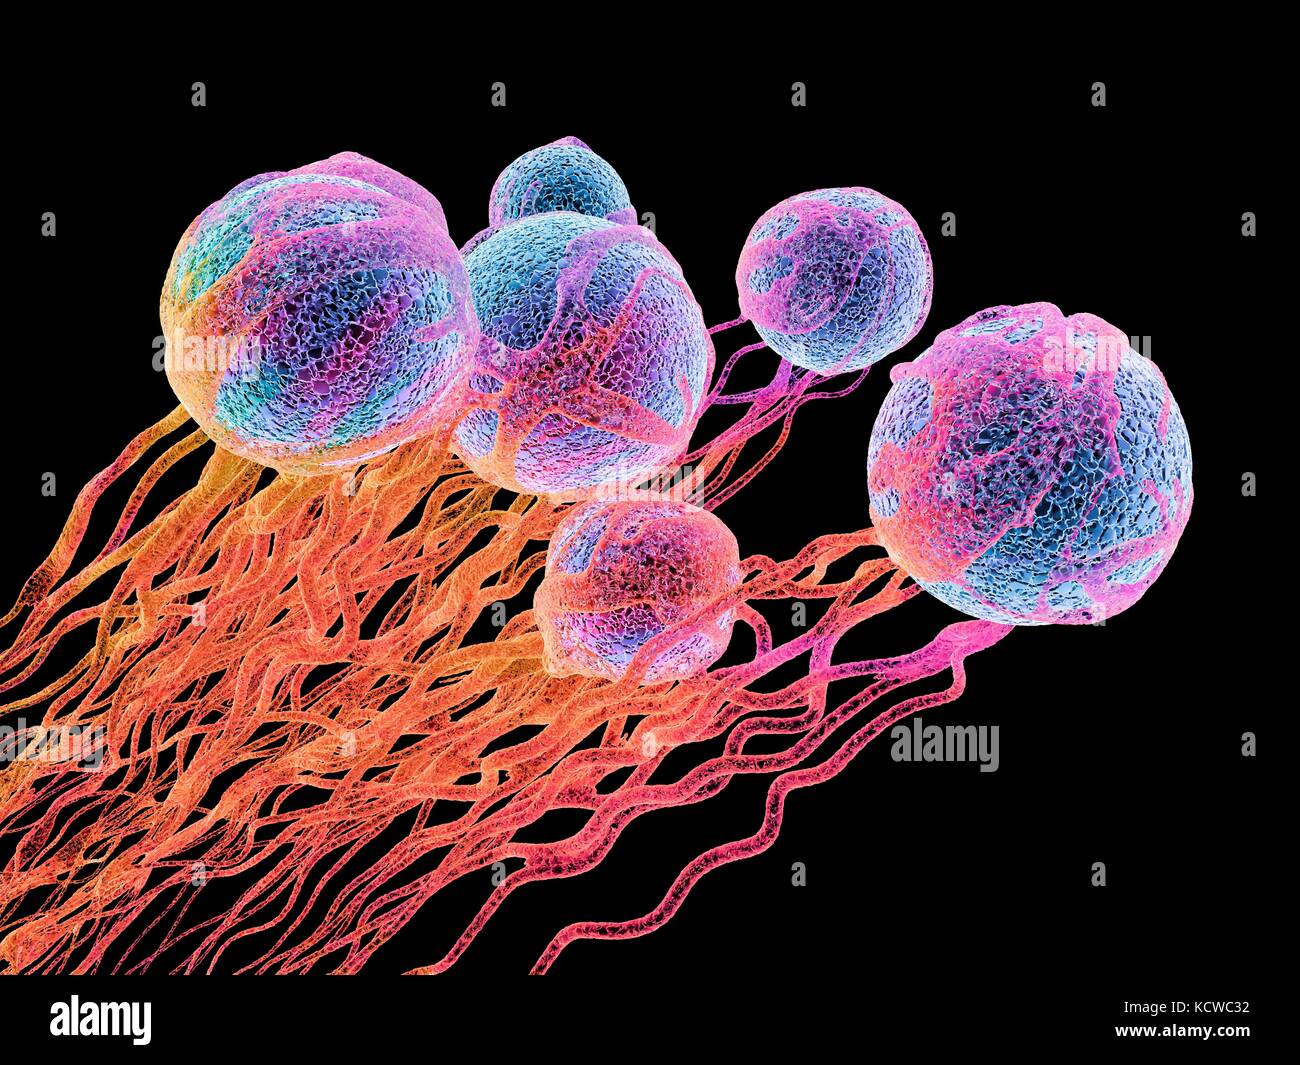 Las células cancerosas. Equipo ilustración de las células cancerosas,  mostrando la formación de vasos sanguíneos proporcionando las celdas con  los oxígenos y nutrigens. Las células con sus núcleos mostrados en azul  Fotografía